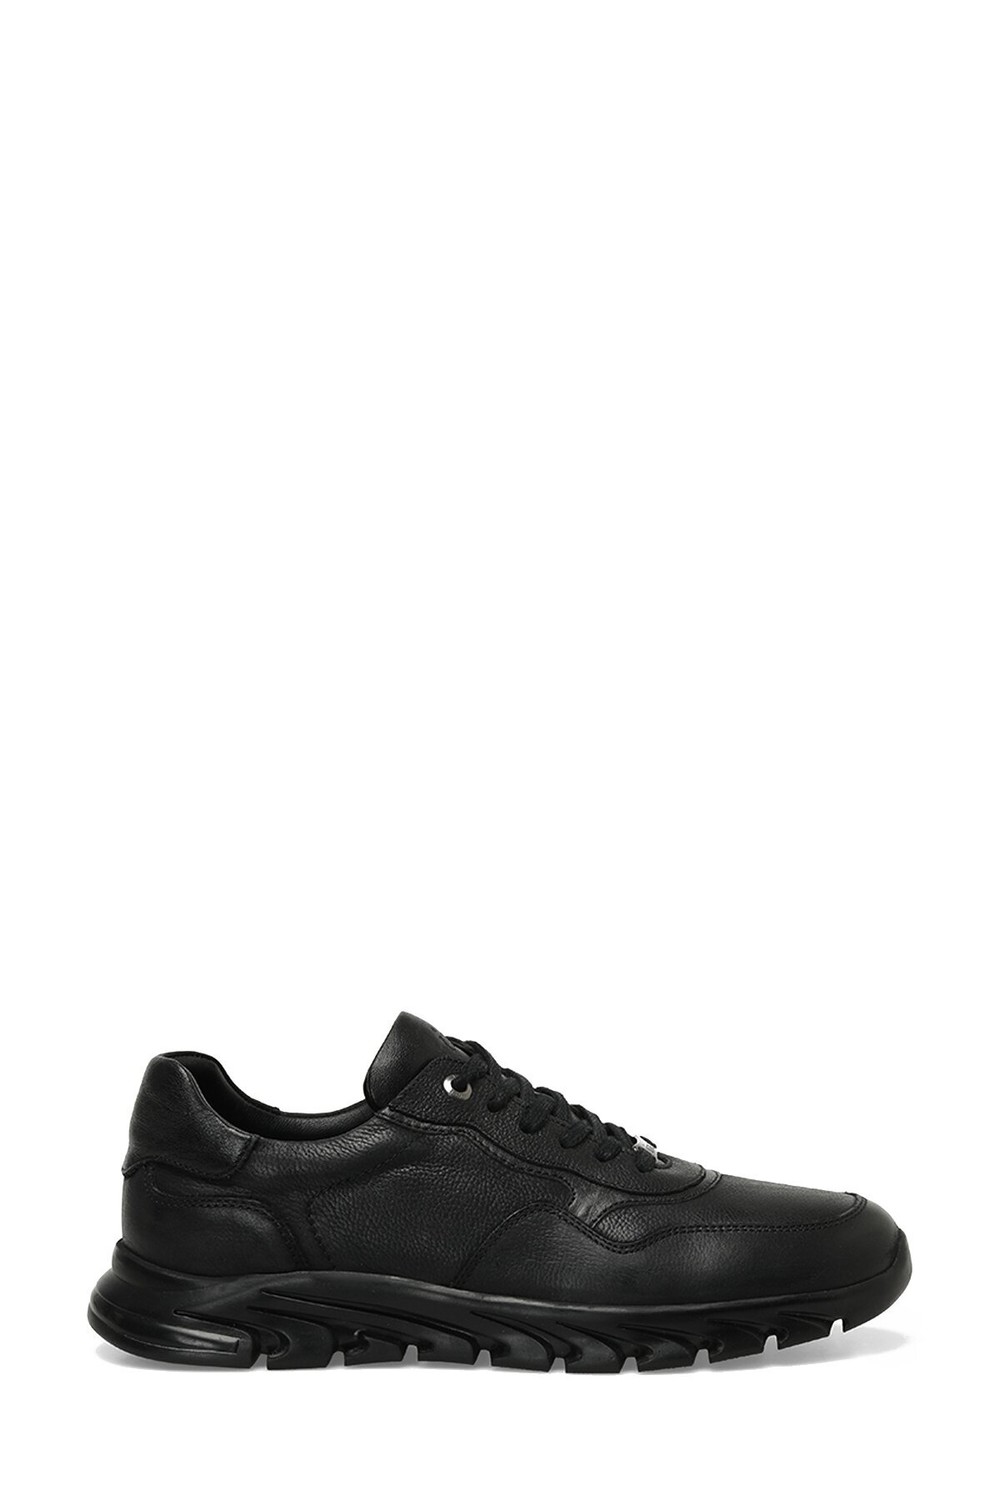 İnci PEARL DAIRAN 3PR Black Men's Sneaker